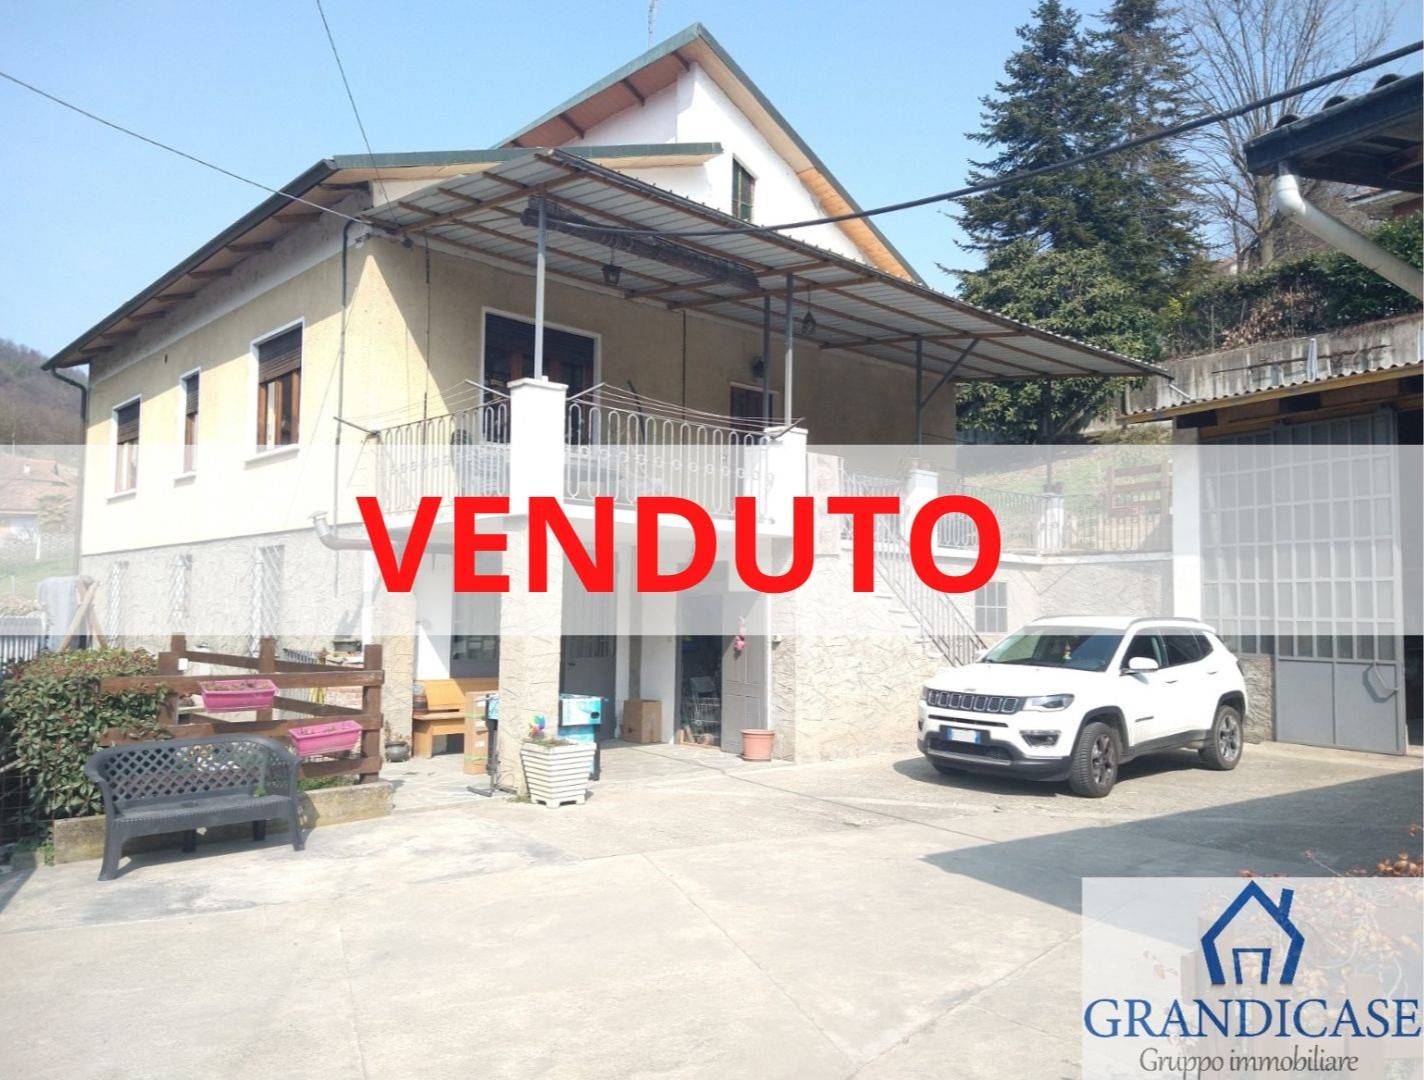 Villa in vendita a San Sebastiano da Po, 5 locali, zona Località: SARONSELLA, prezzo € 145.000 | CambioCasa.it